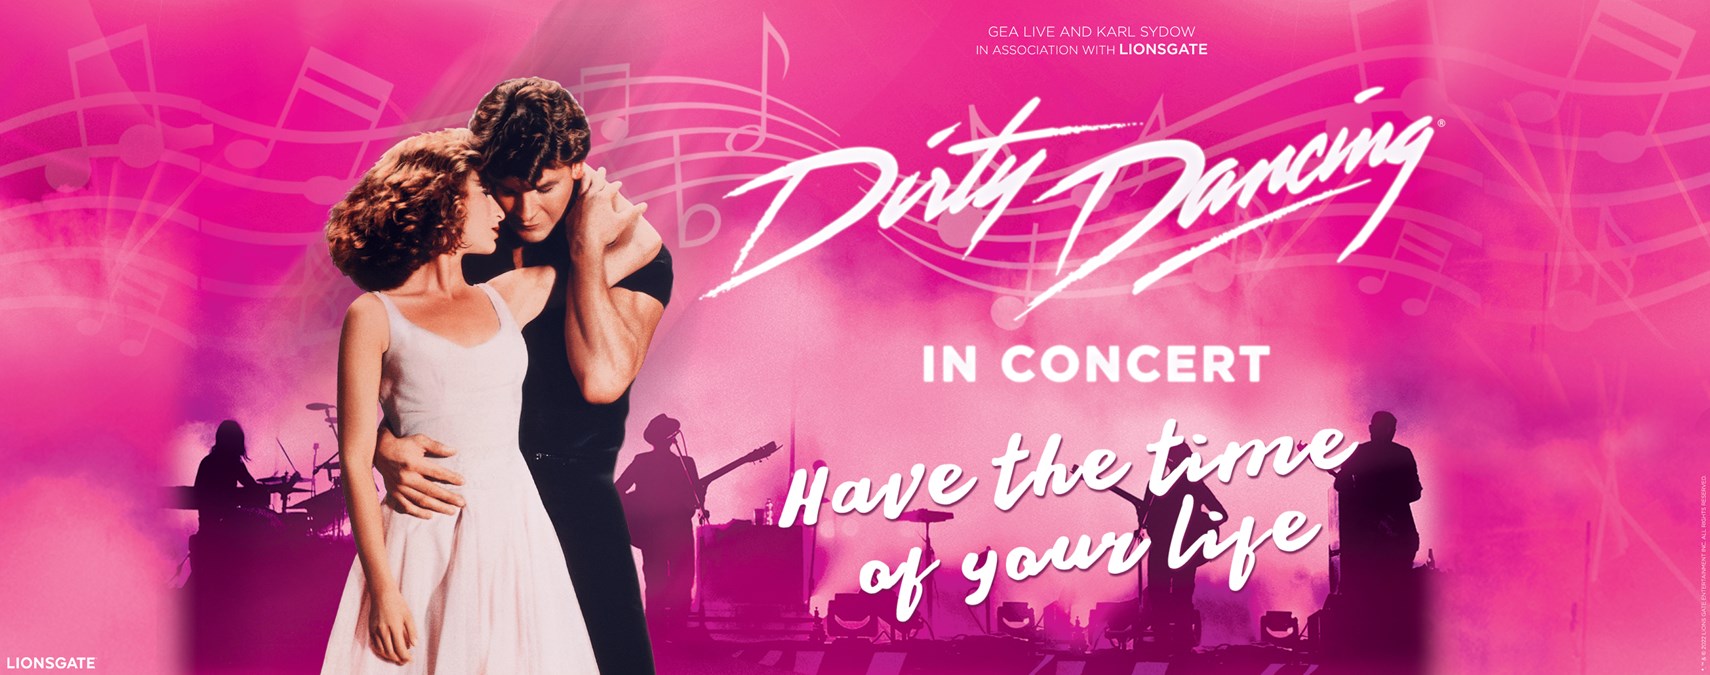 Dirty Dancing in Concert - November 18 at 8 p.m.